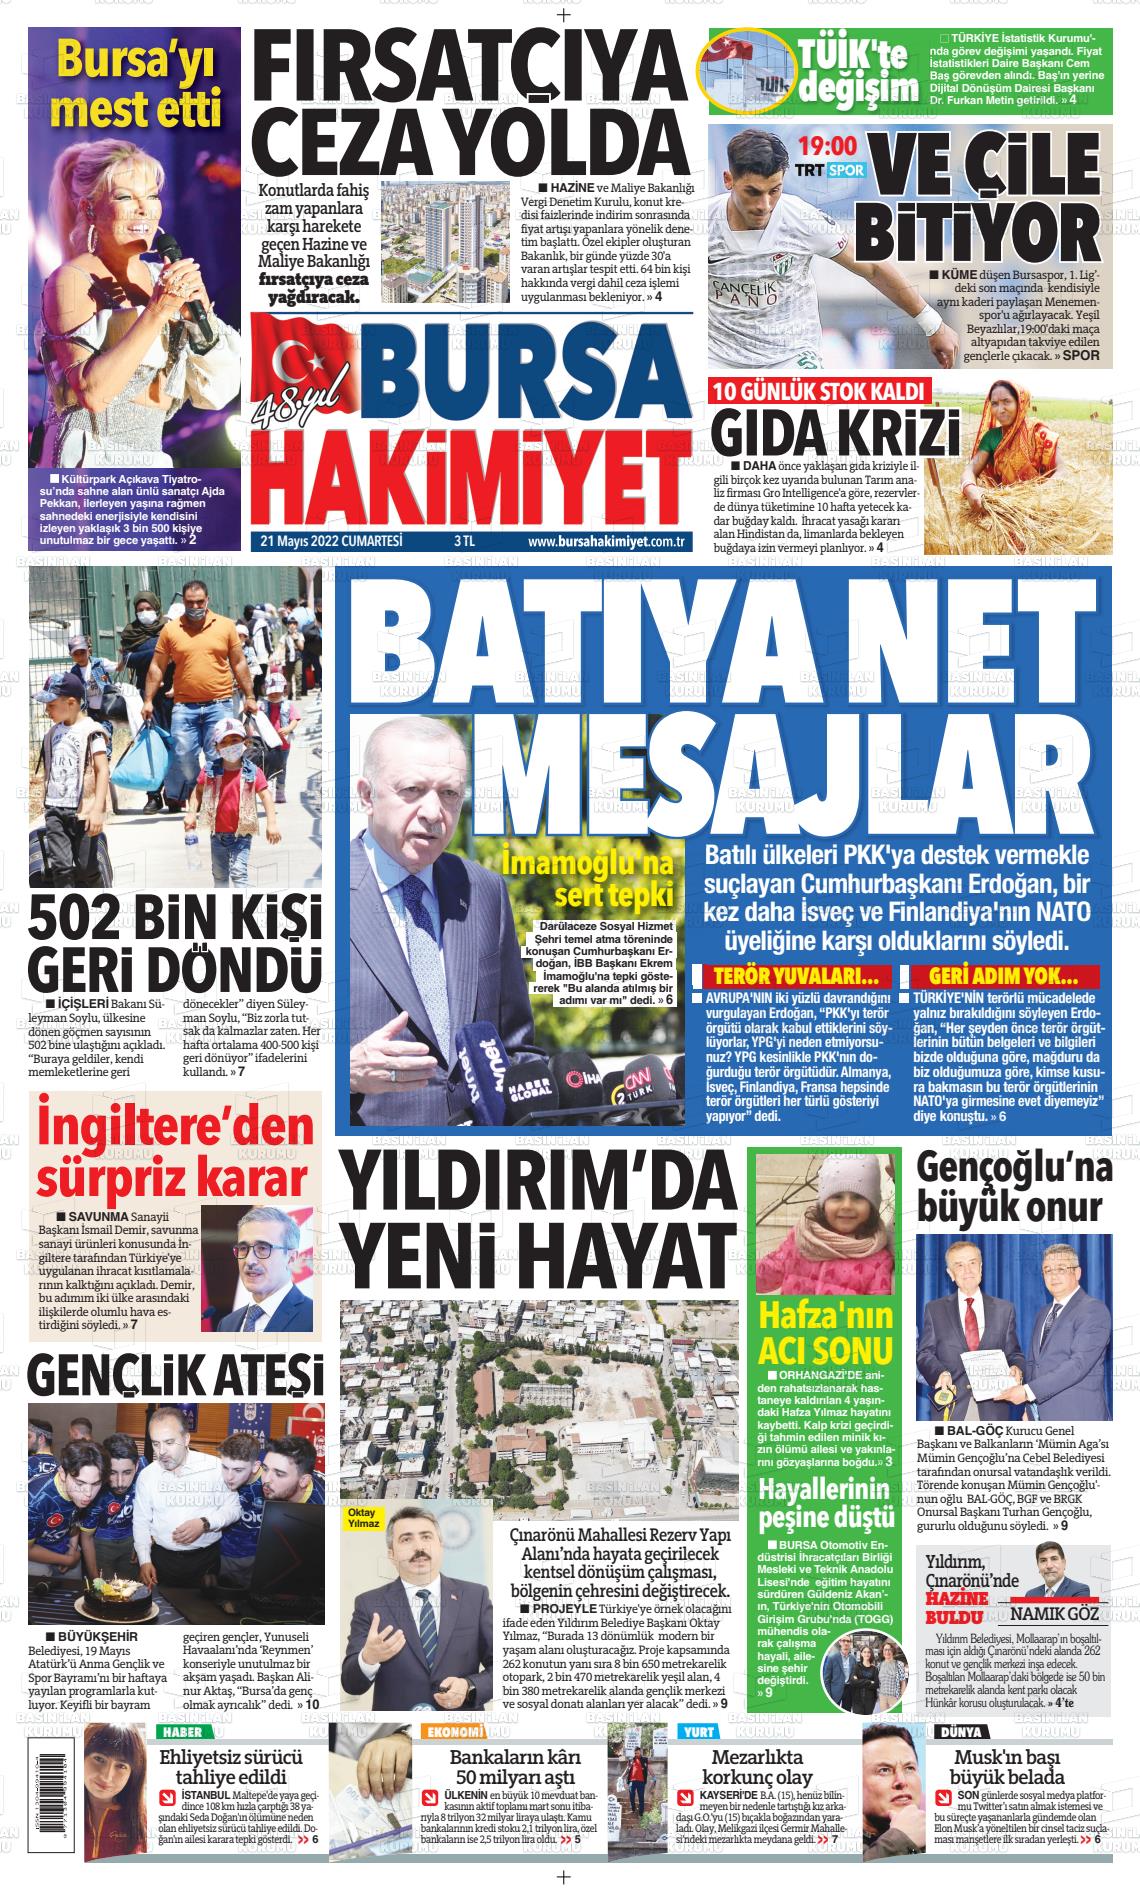 Bursa Hakimiyet Gazete Manşeti